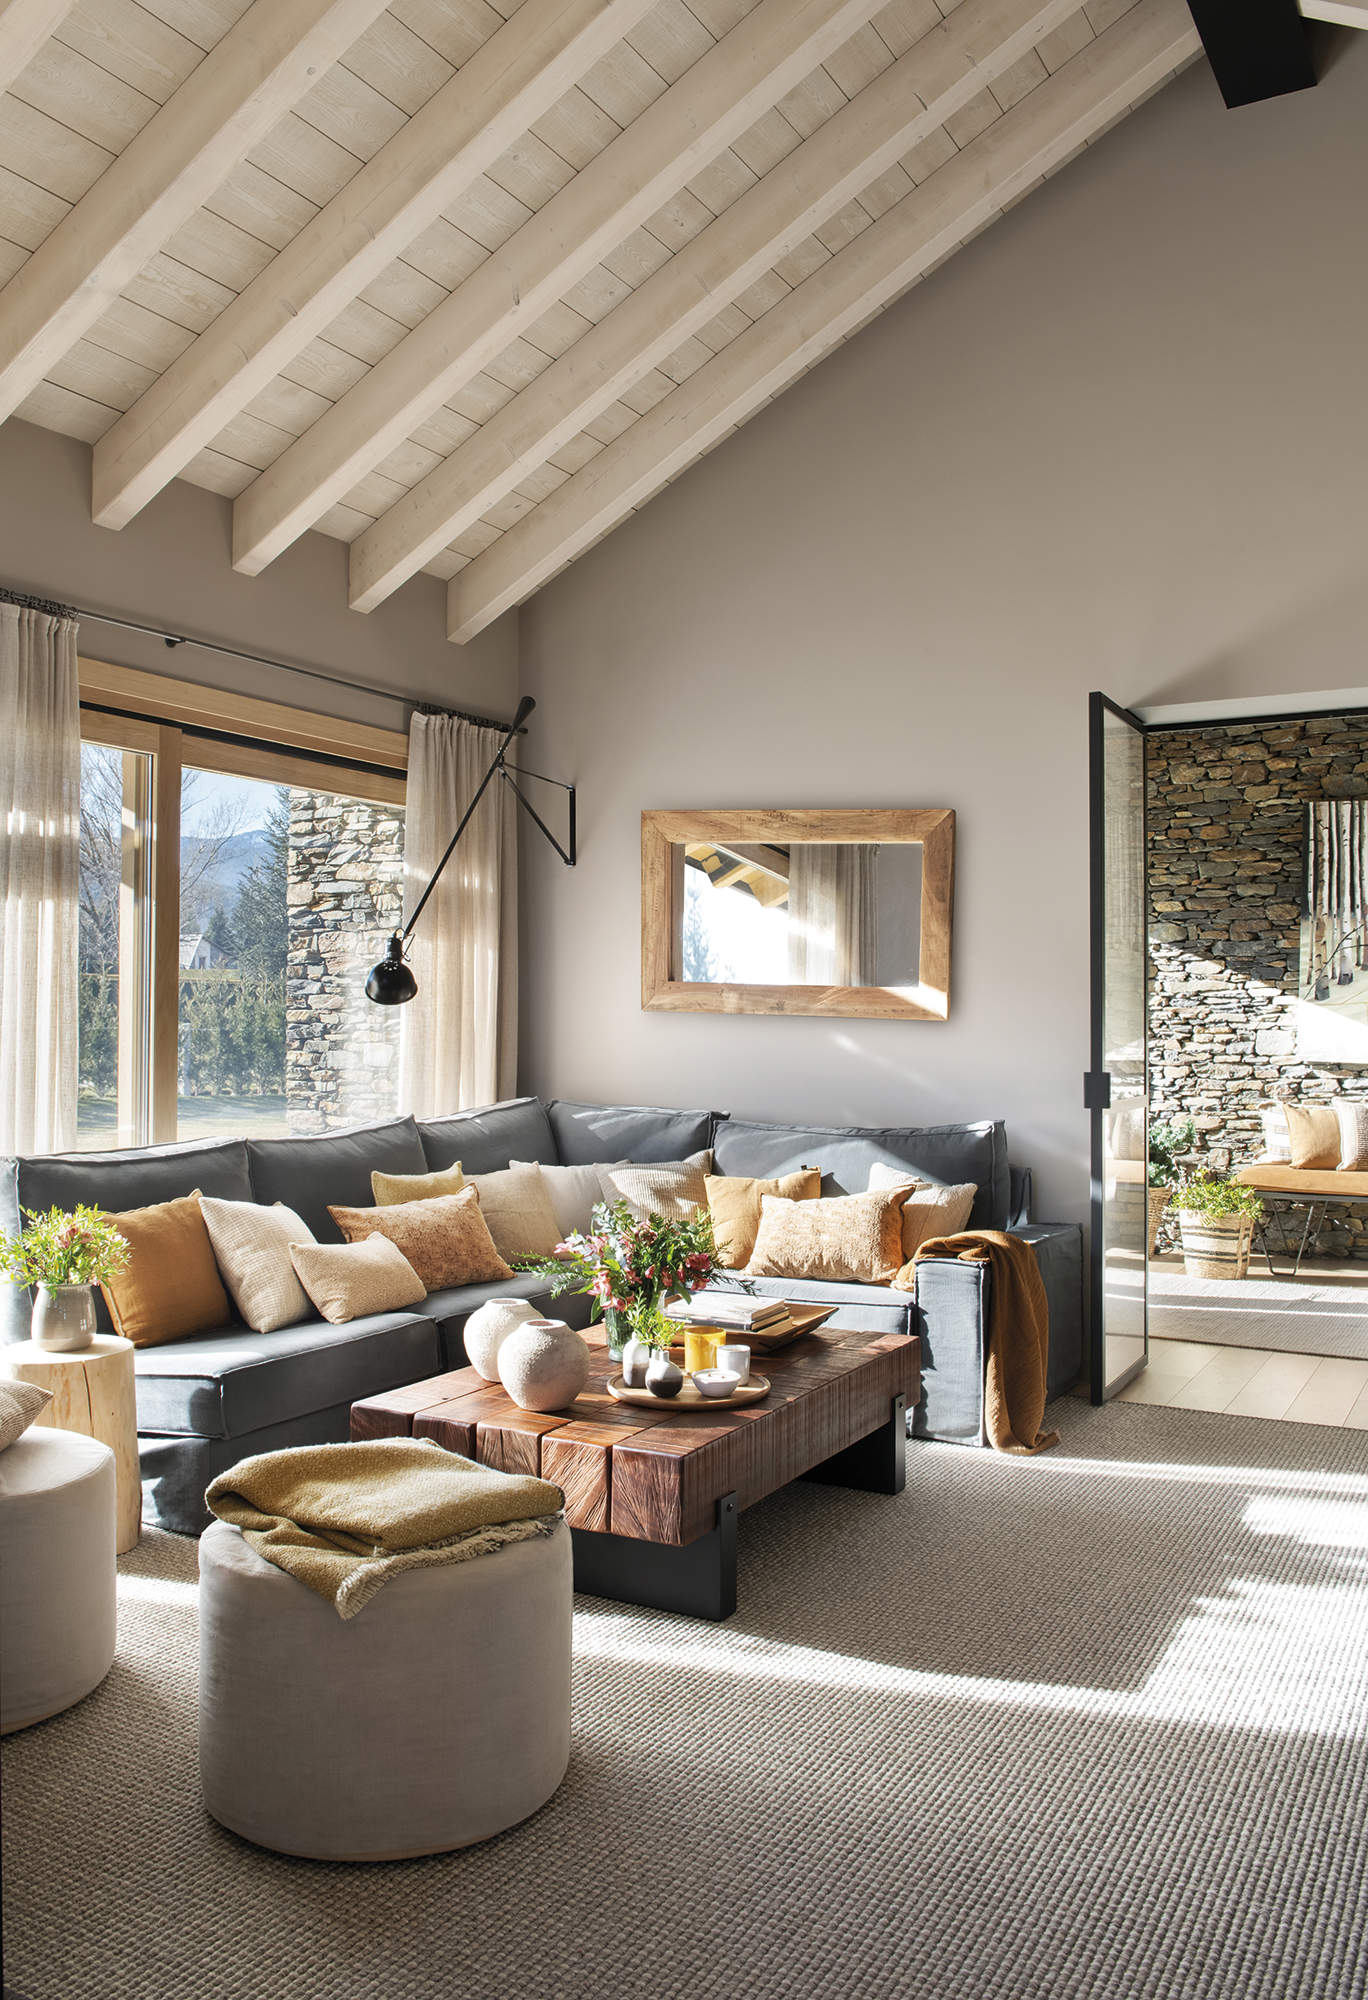 salón con techo alto con vigas de madera, sofá gris esquinero con cojines beige y naranja, mesa de centro de madera rústica,  alfombra gris